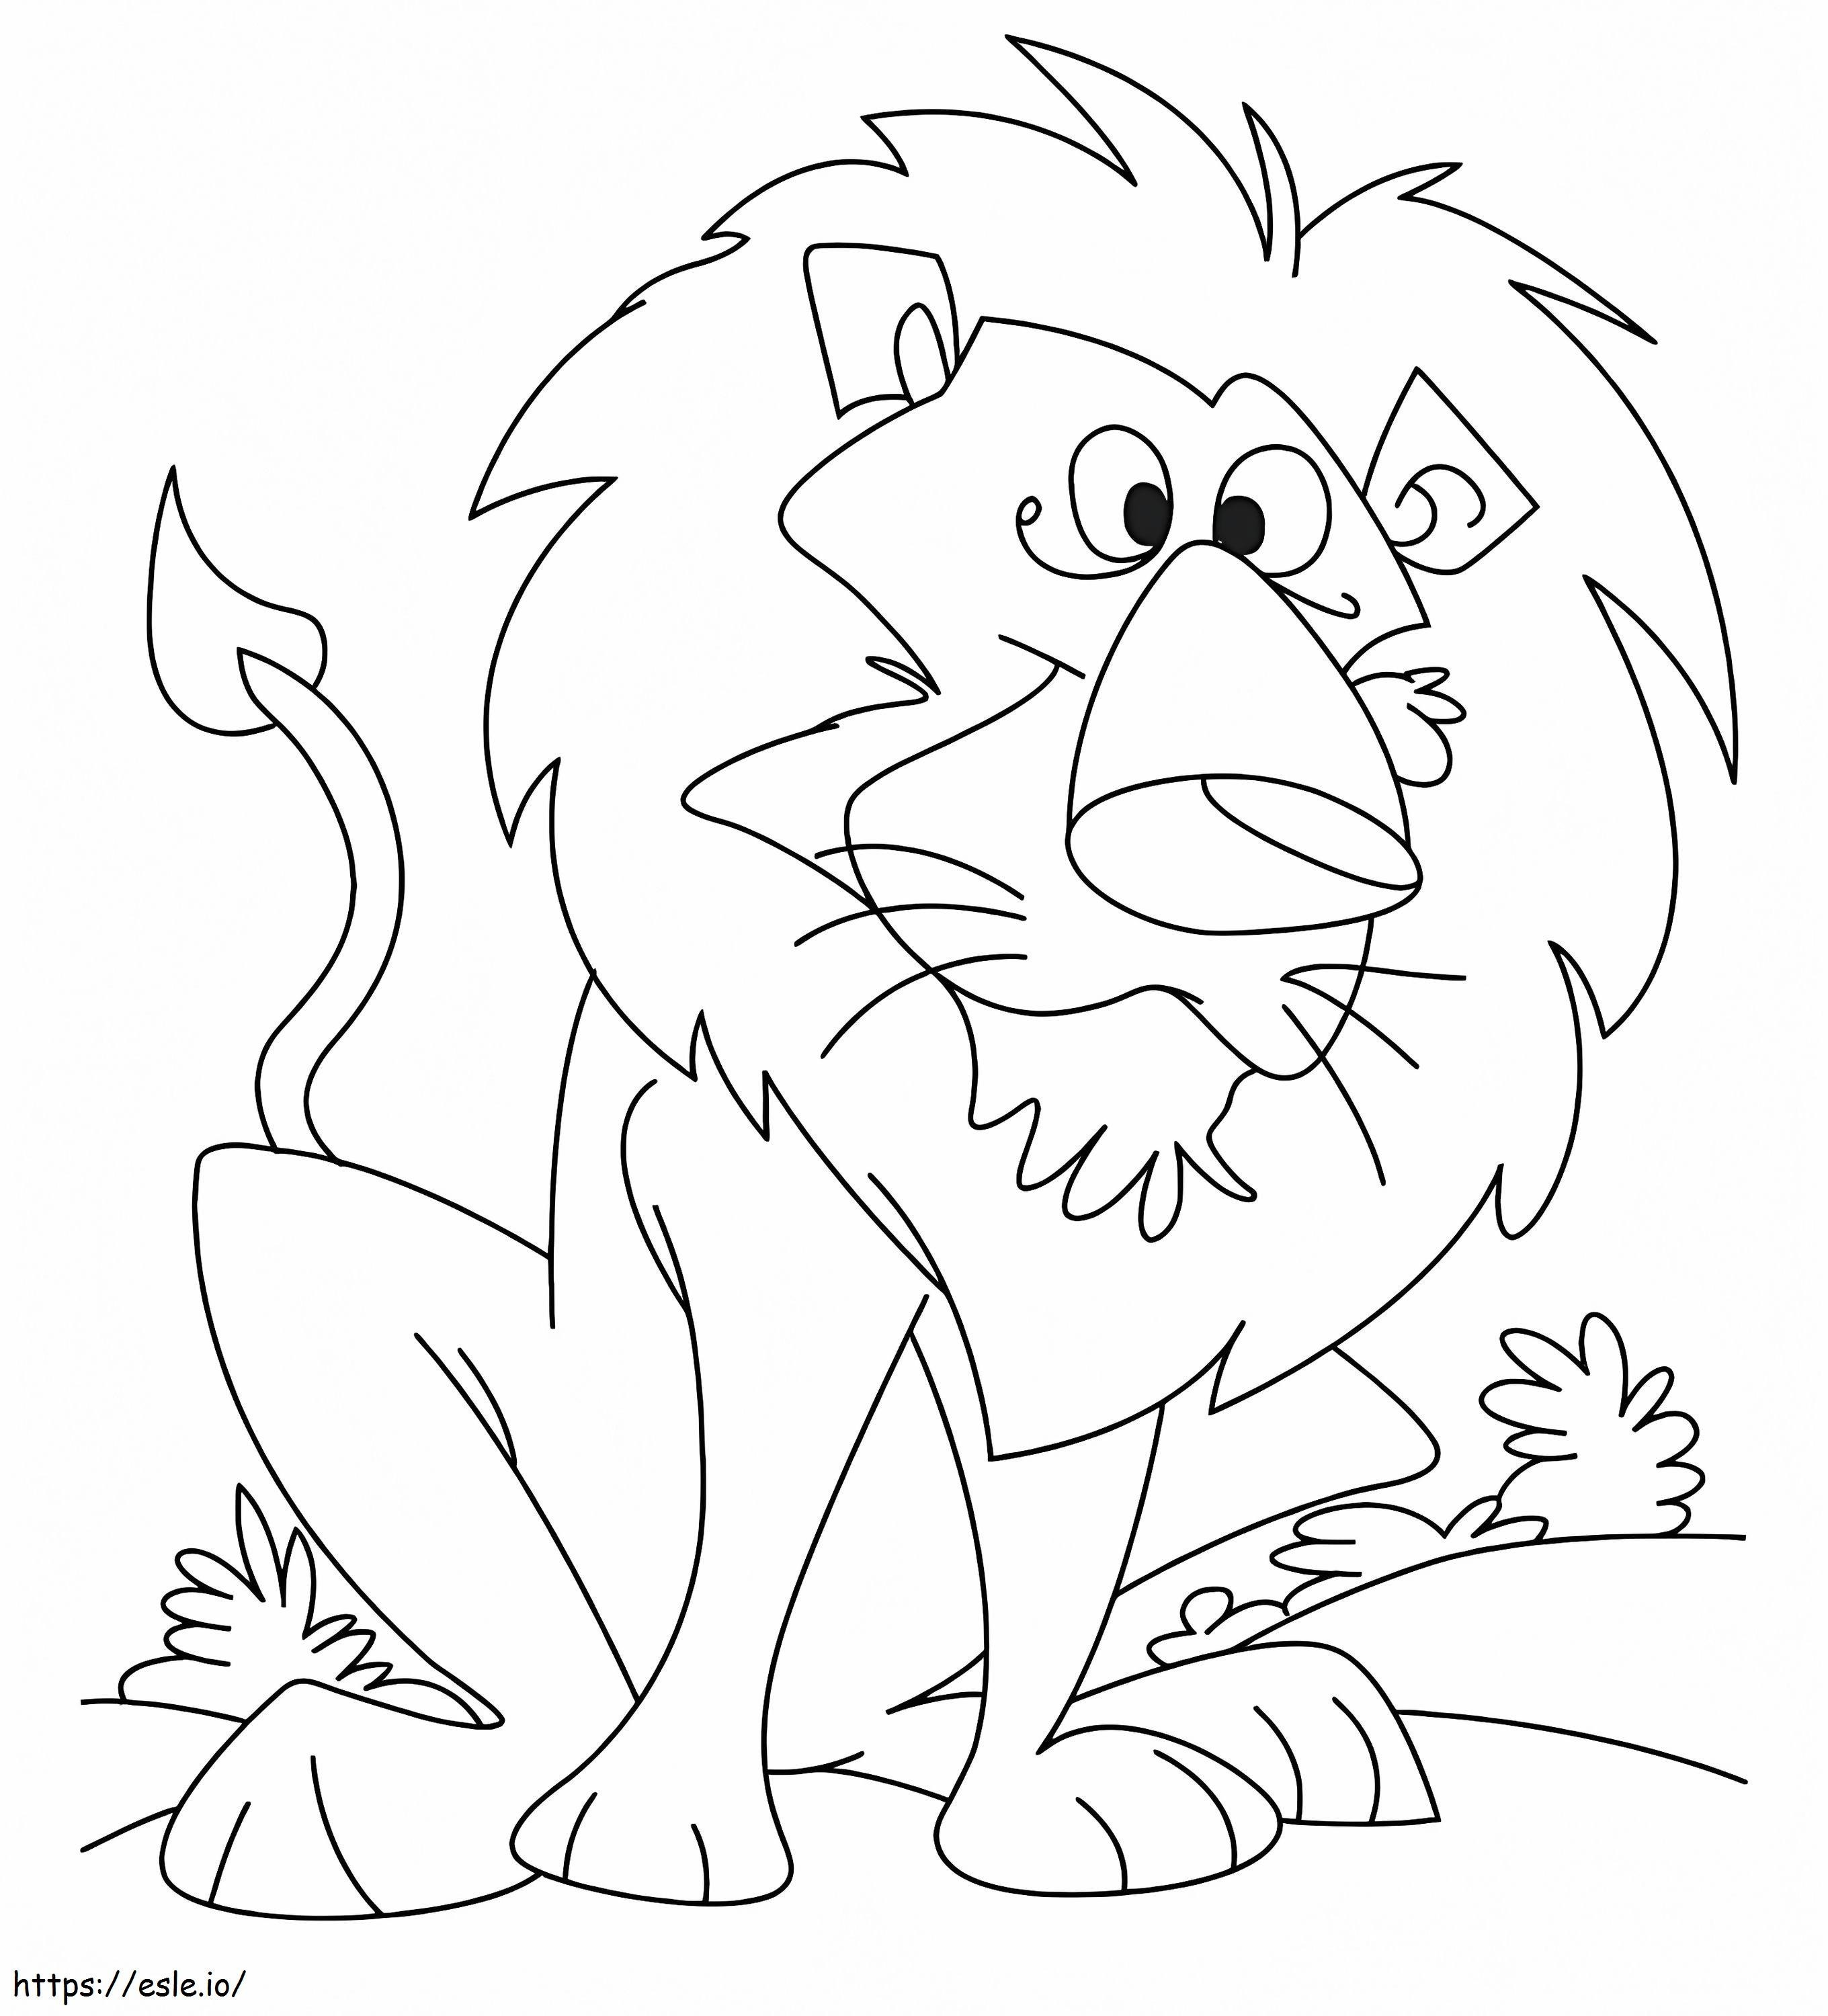 Crazy Lion coloring page